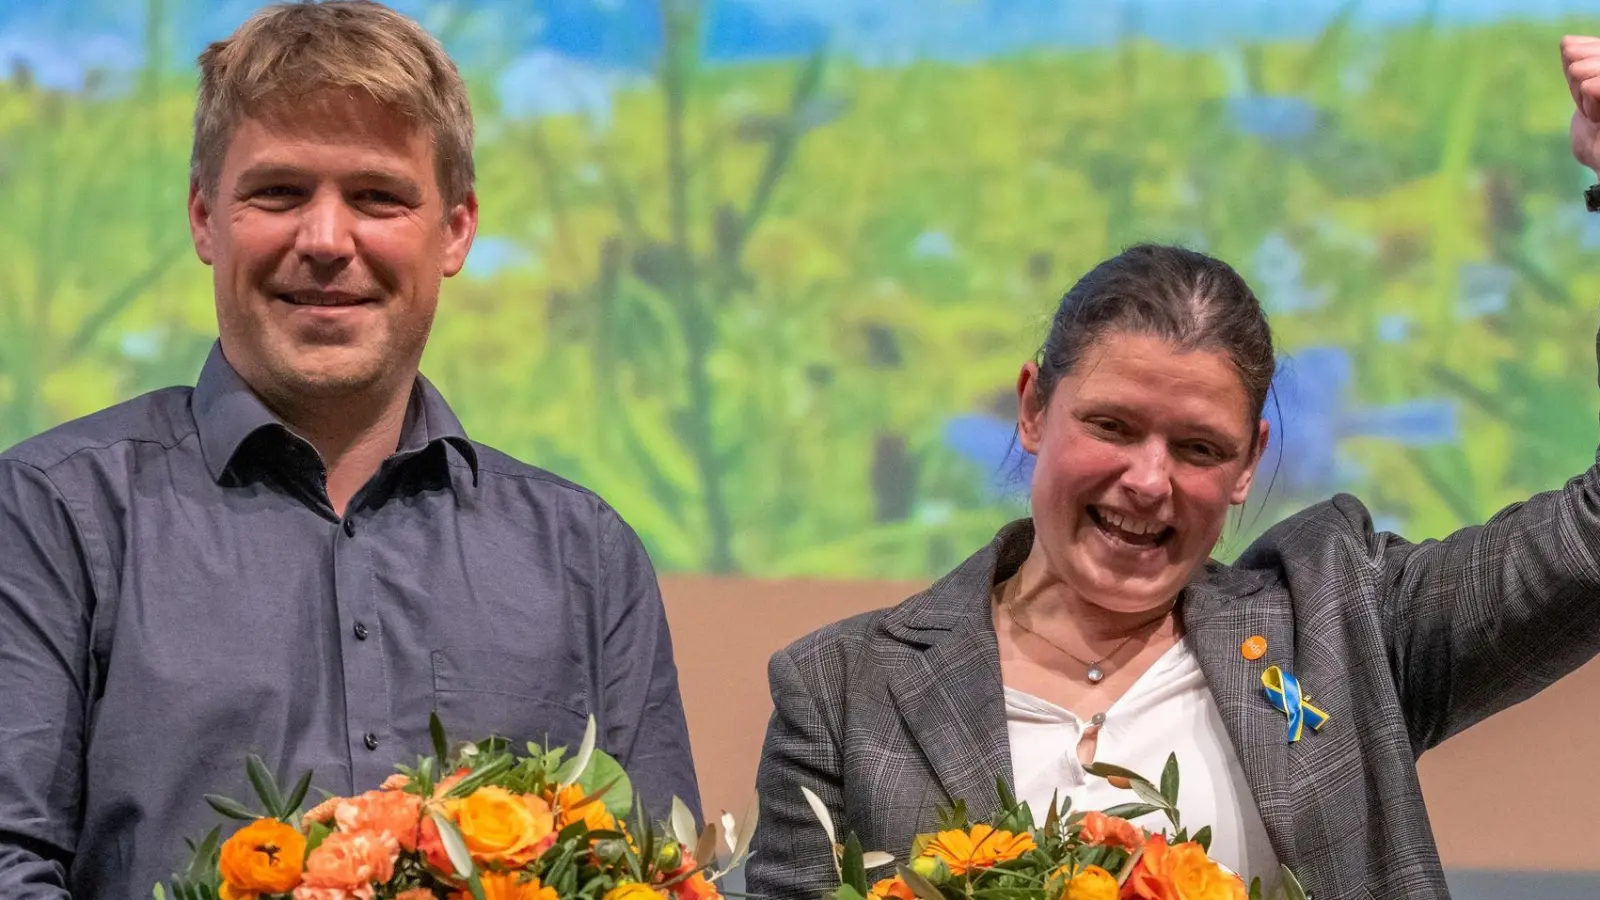 Agnes Becker und Tobias Ruff bei der Wiederwahl zur Doppelspitze beim Landesparteitag der ÖDP Bayern. (Foto: Armin Weigel/dpa)